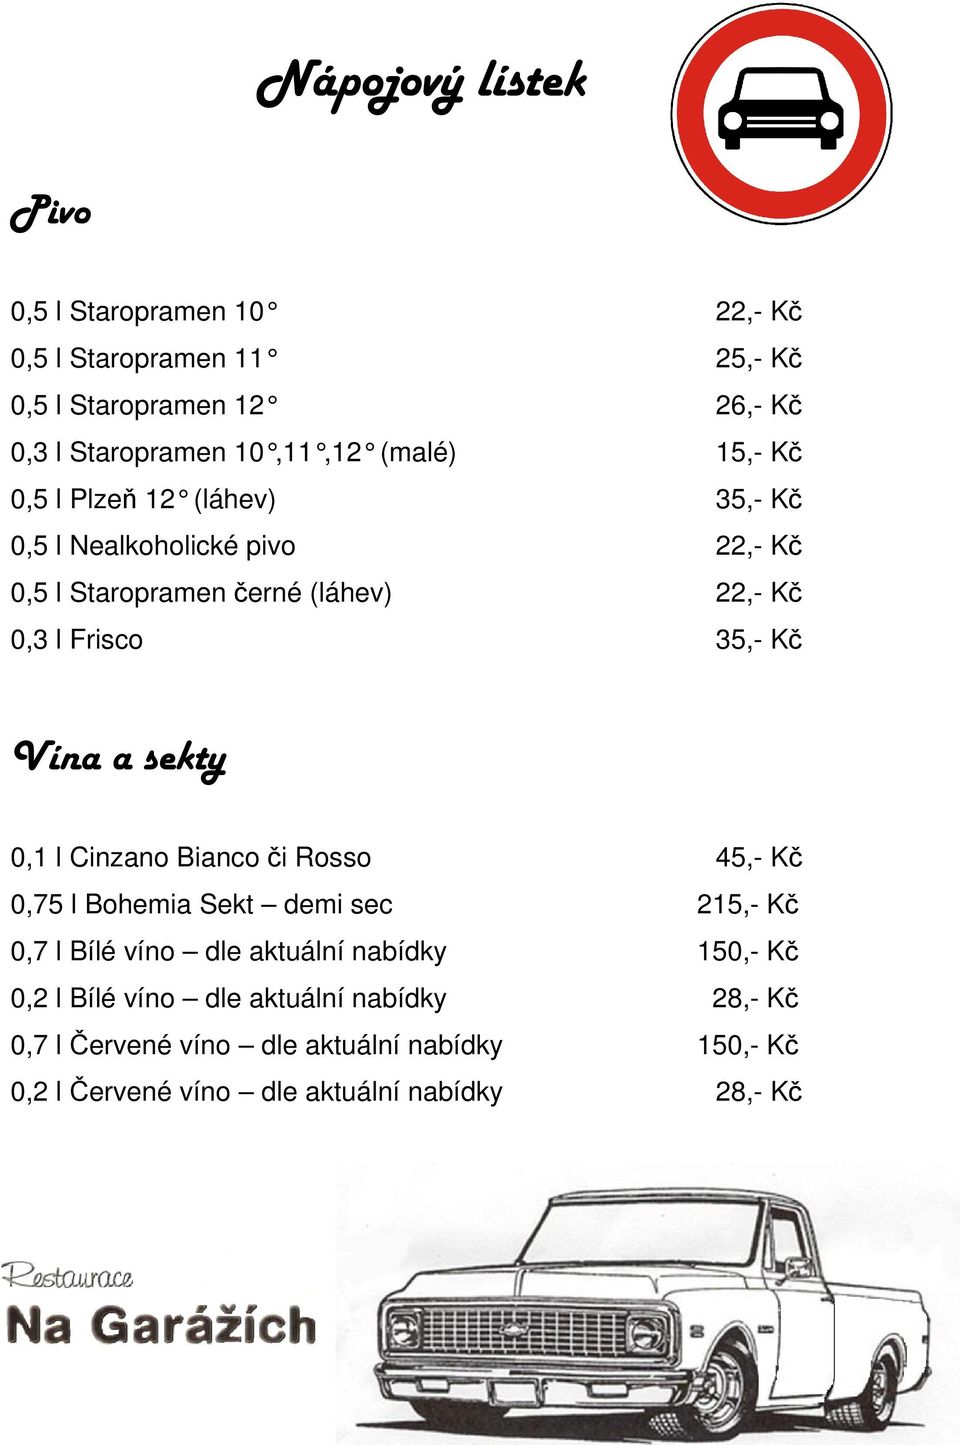 Kč Vína a sekty 0,1 l Cinzano Bianco či Rosso 45,- Kč 0,75 l Bohemia Sekt demi sec 215,- Kč 0,7 l Bílé víno dle aktuální nabídky 150,- Kč